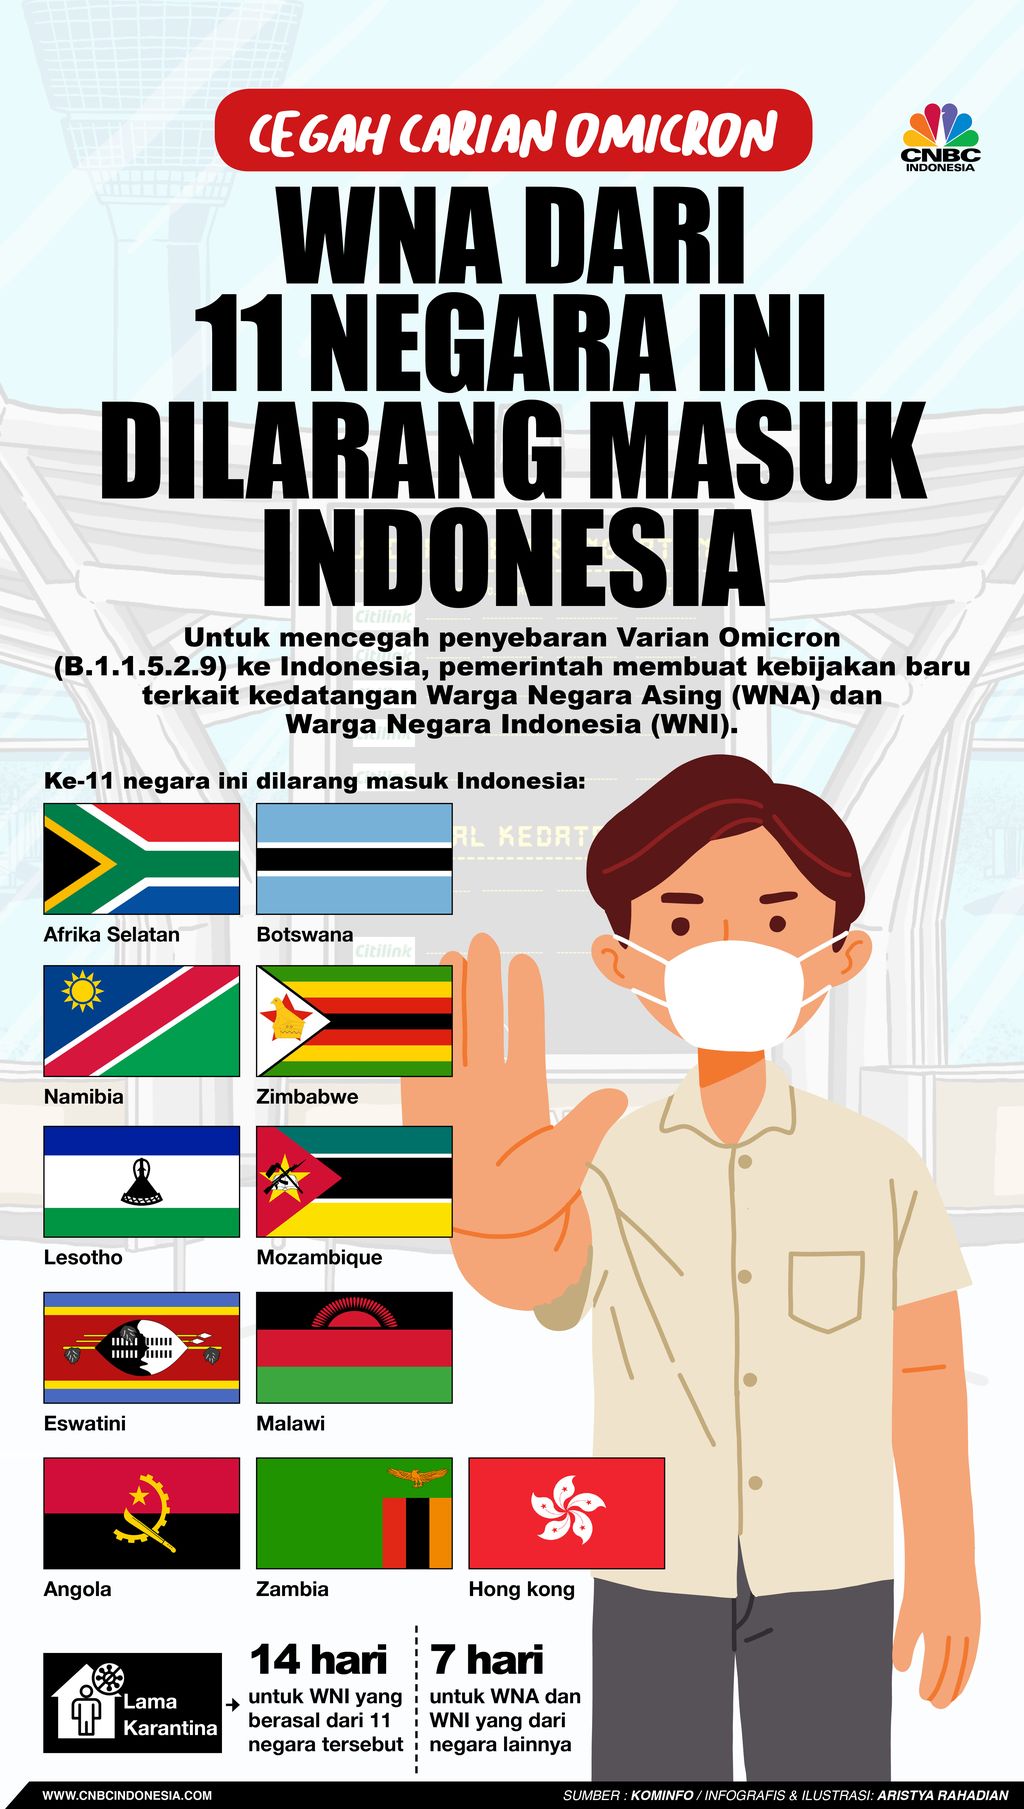 Infografis/Cegah Varian Omicron, WNA dari 11 Negara ini Dilarang Masuk Indonesia/Aristya Rahadian